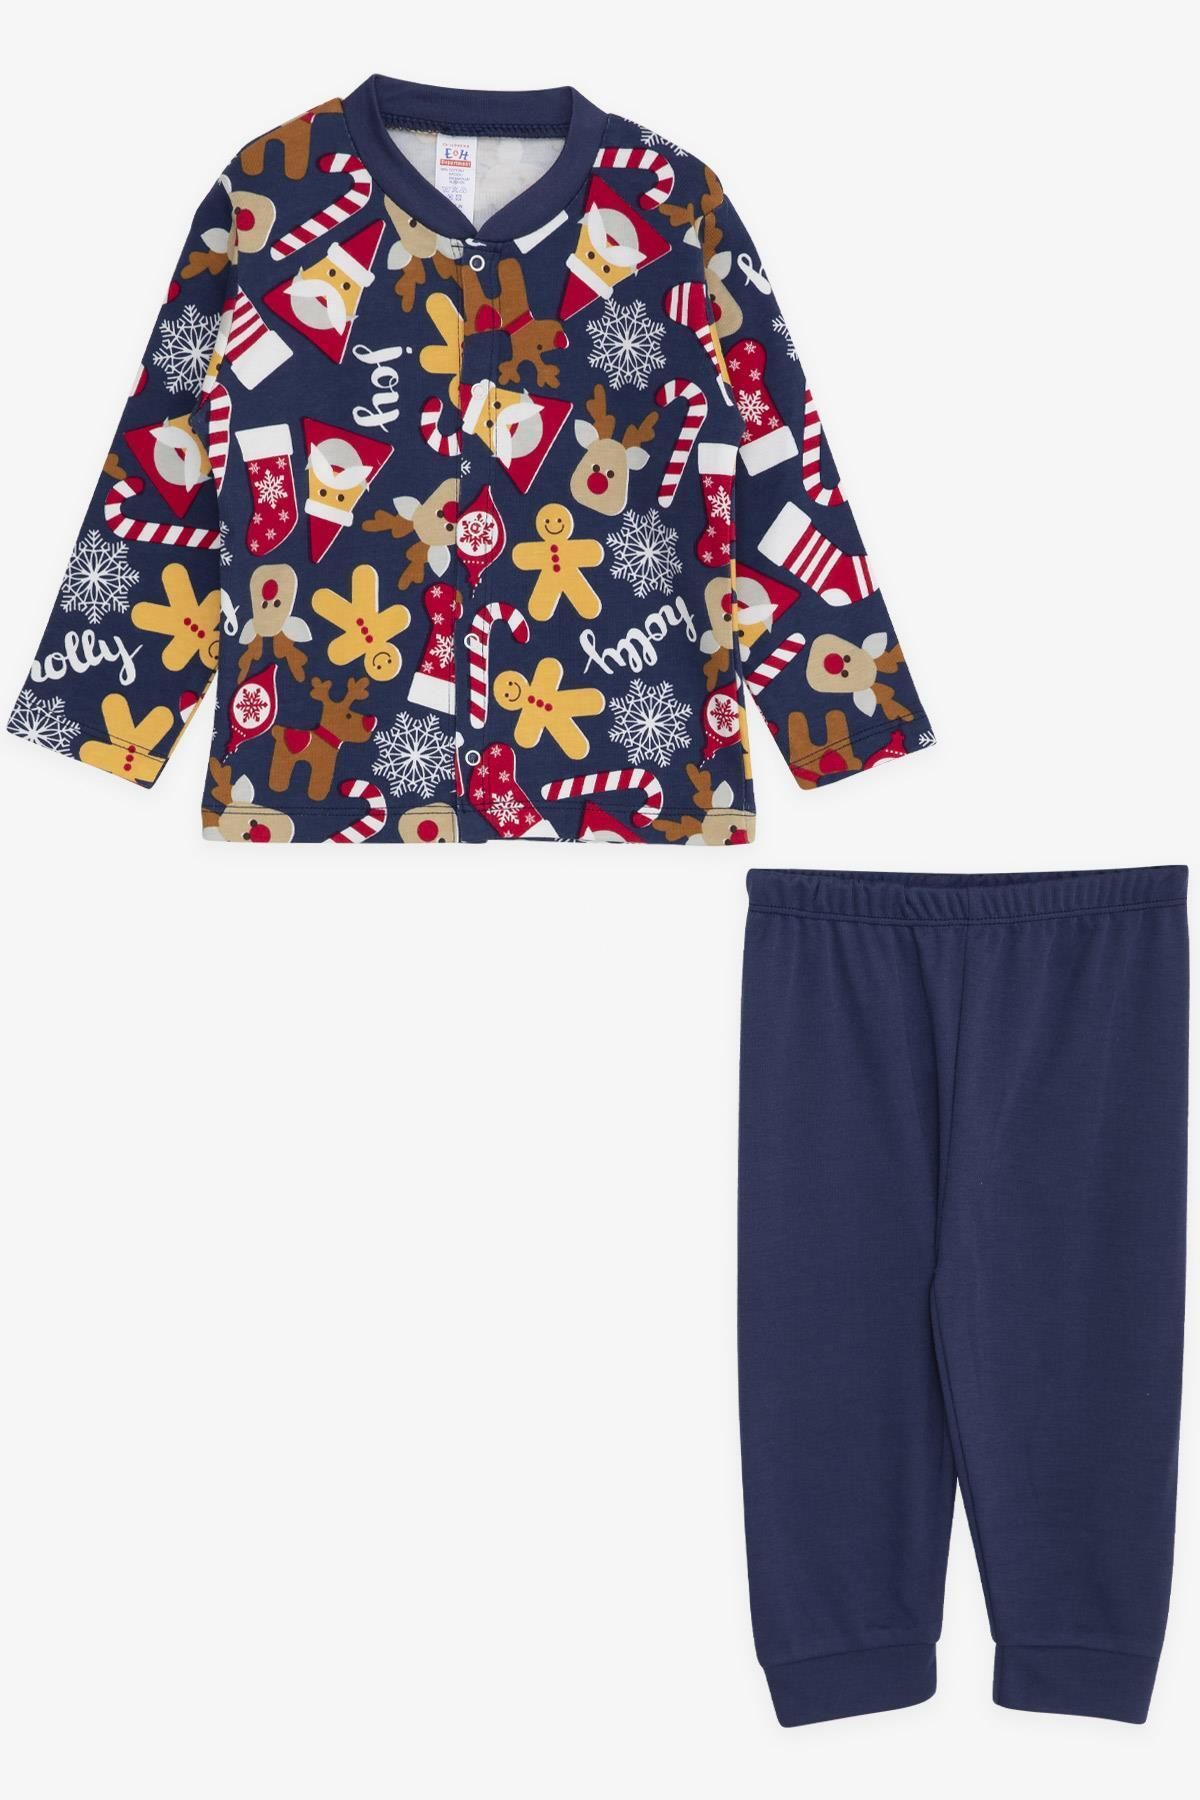 Breeze Erkek Bebek Pijama Takımı Kurabiye Desenli Yılbaşı Temalı 4 Ay-1 Yaş, Koyu Mavi